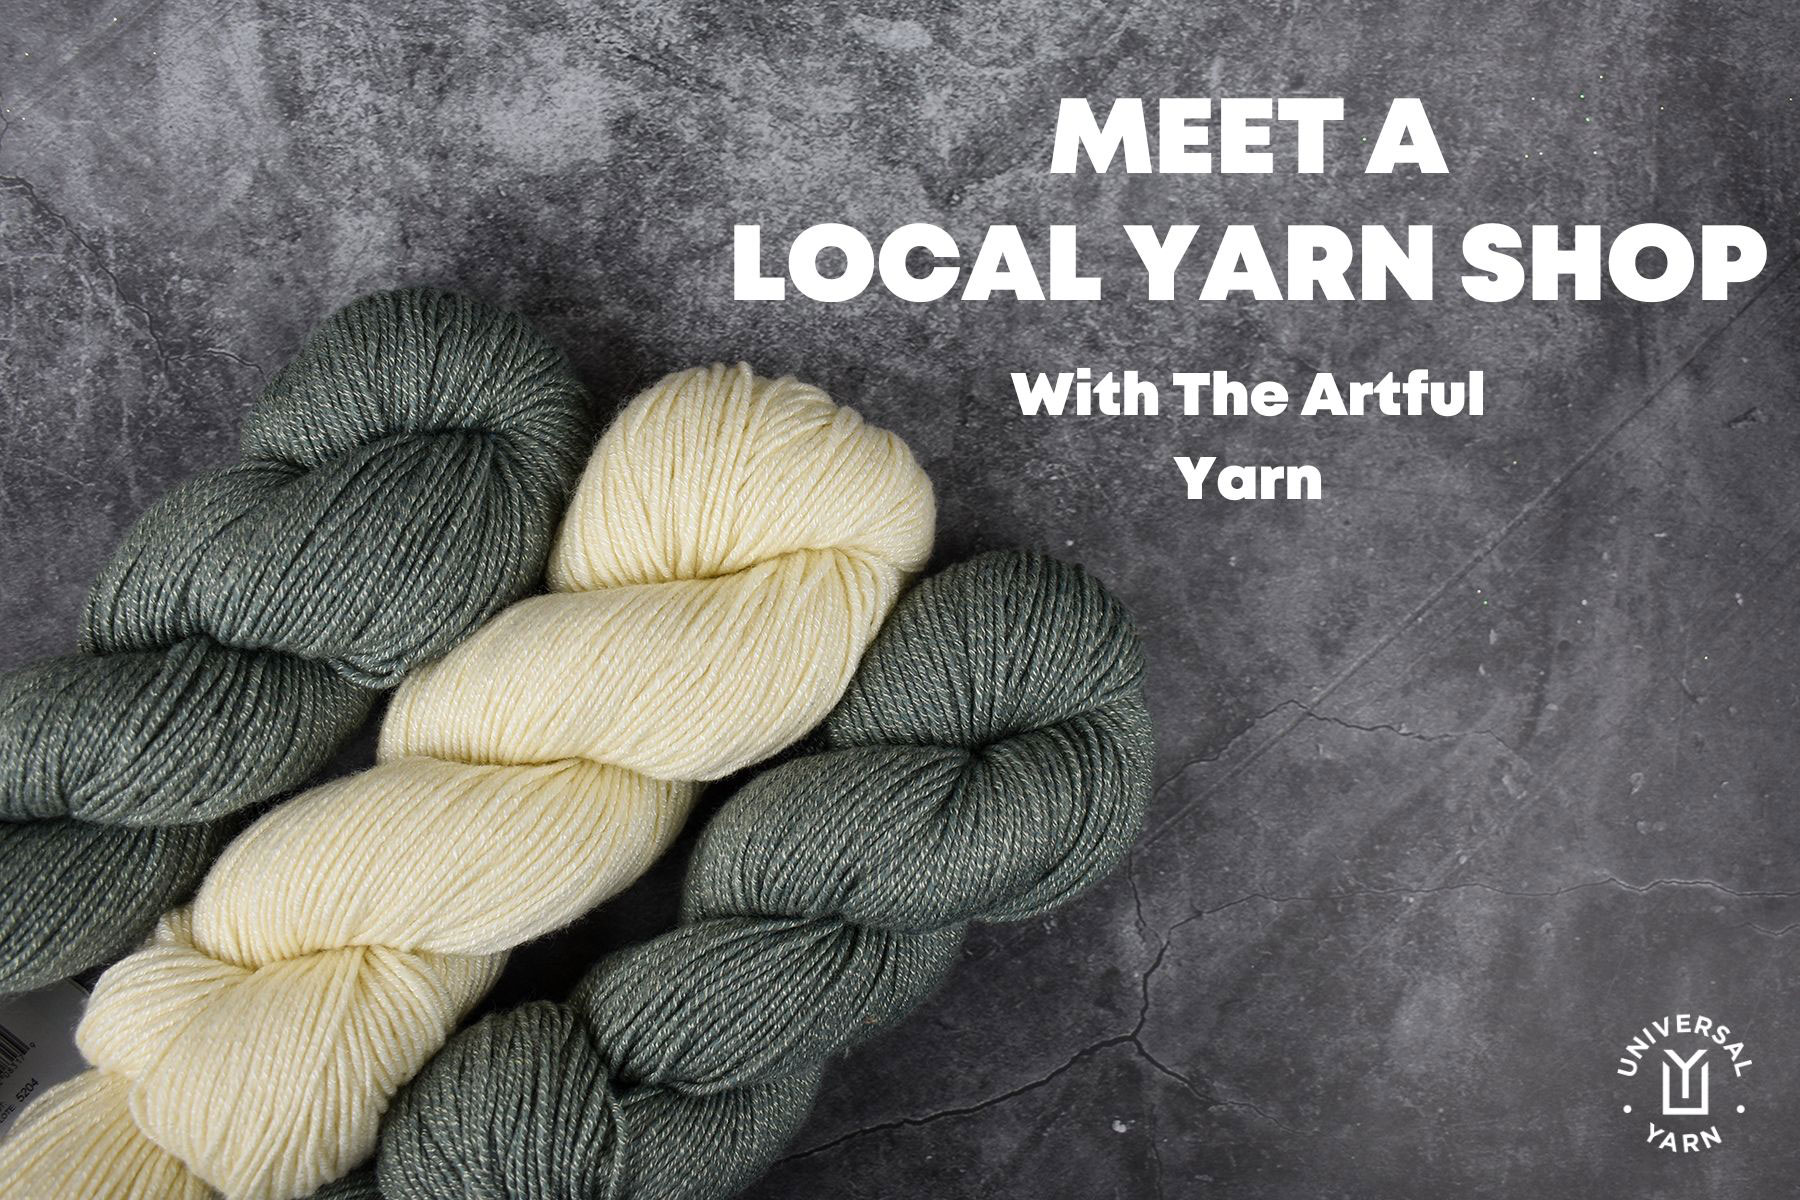 Meet a Local Yarn Shop with The Artful Yarn